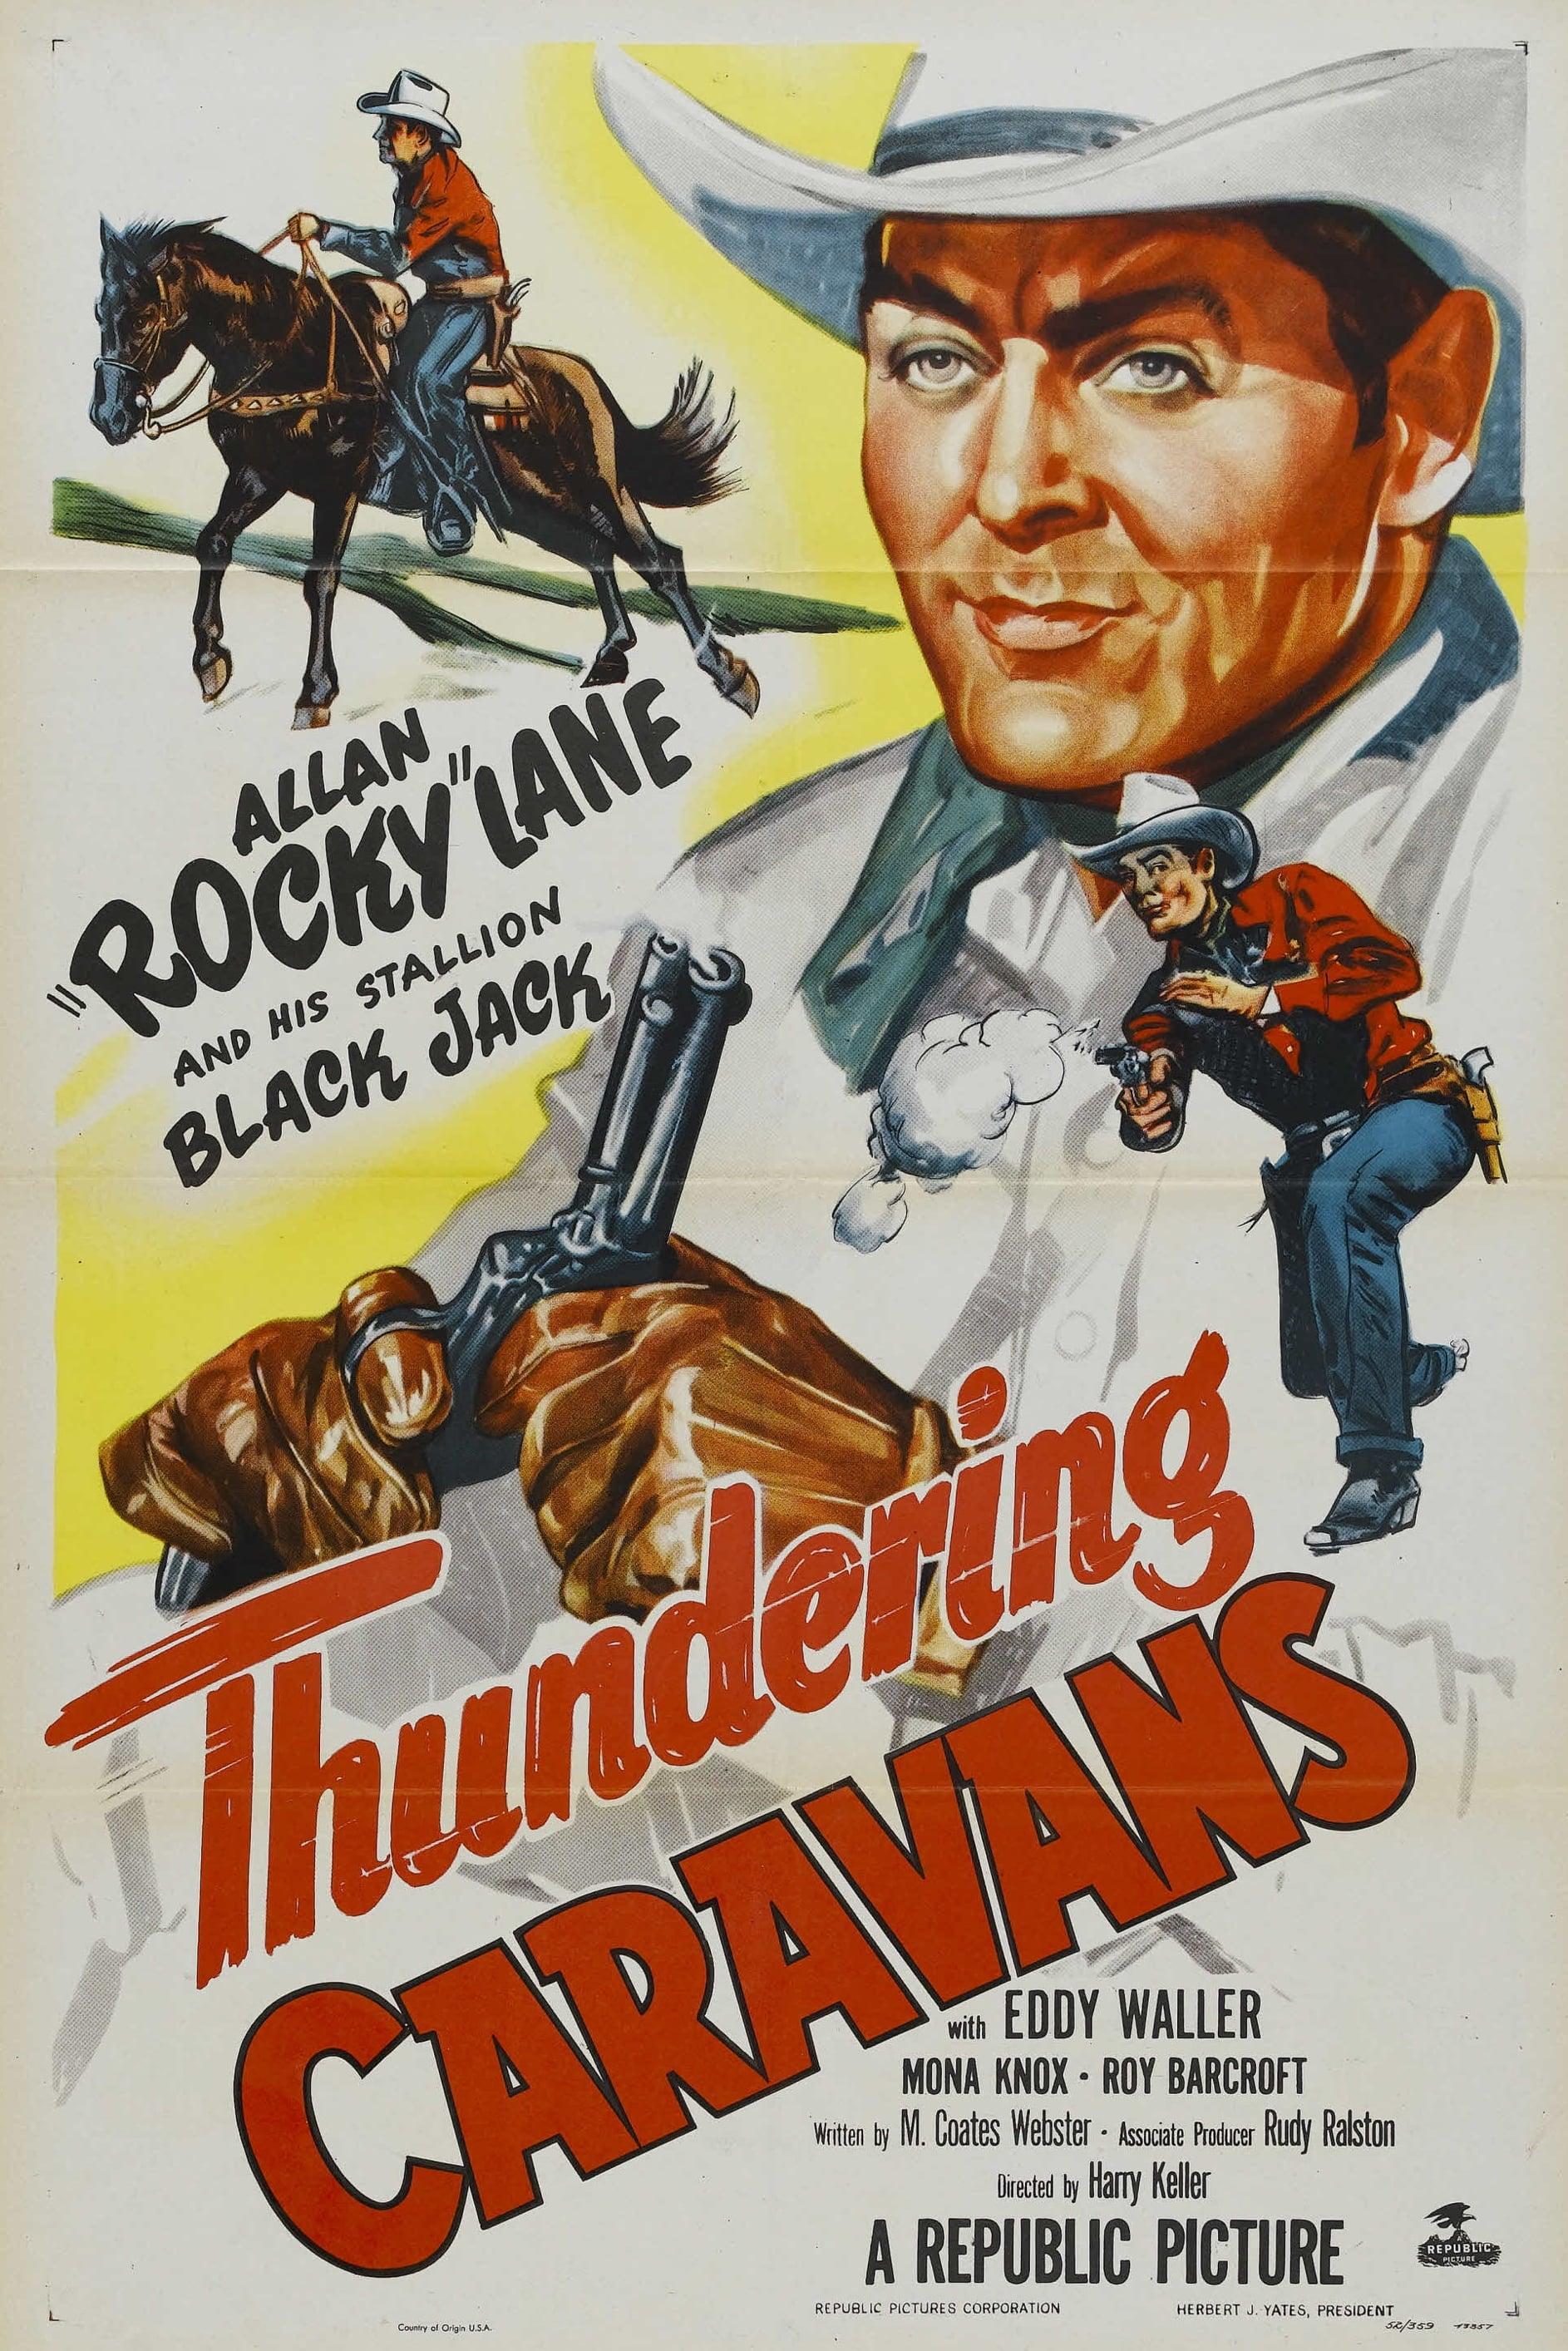 Thundering Caravans poster